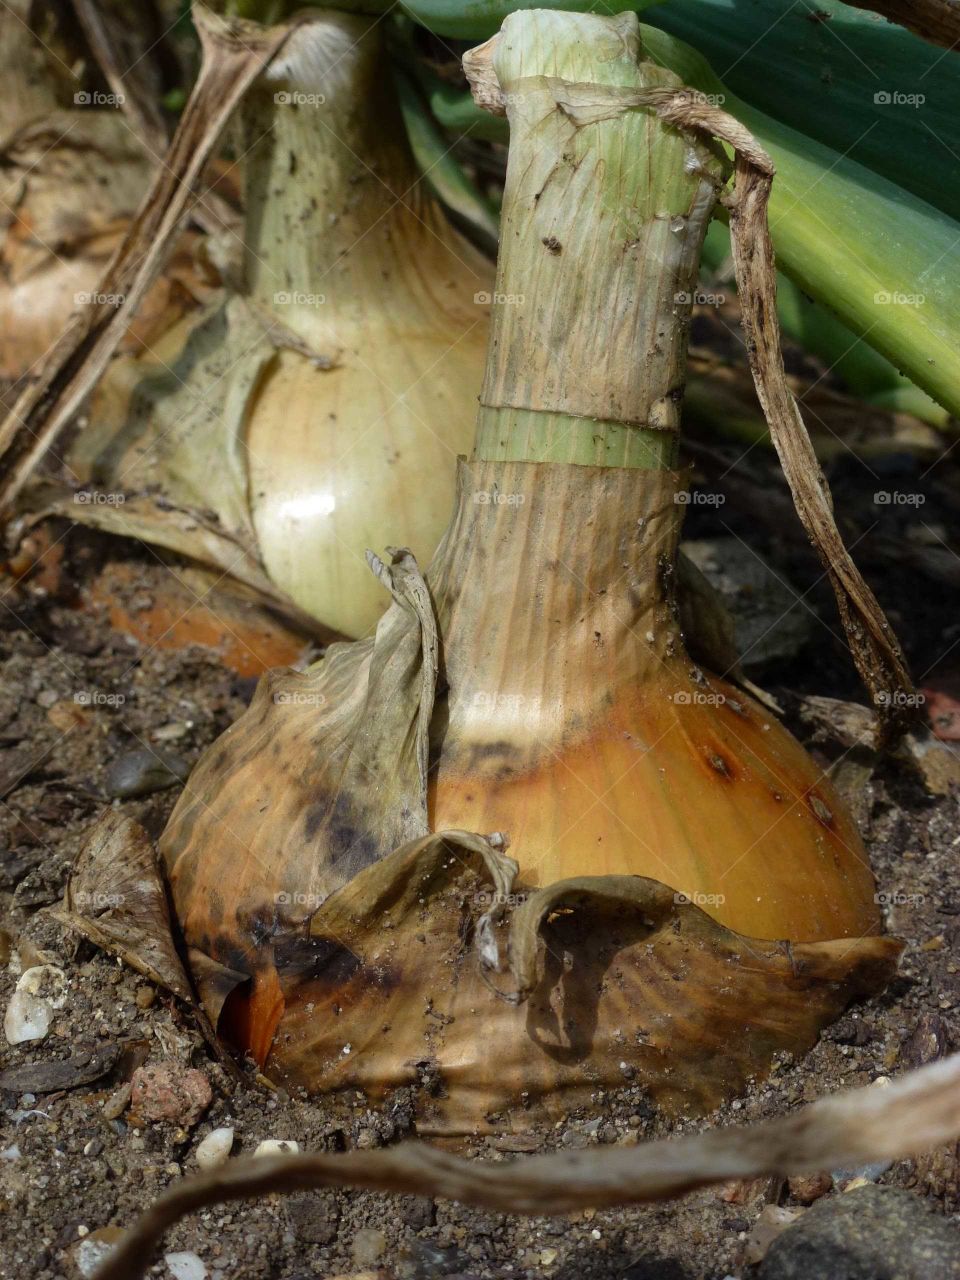 Onion in earth